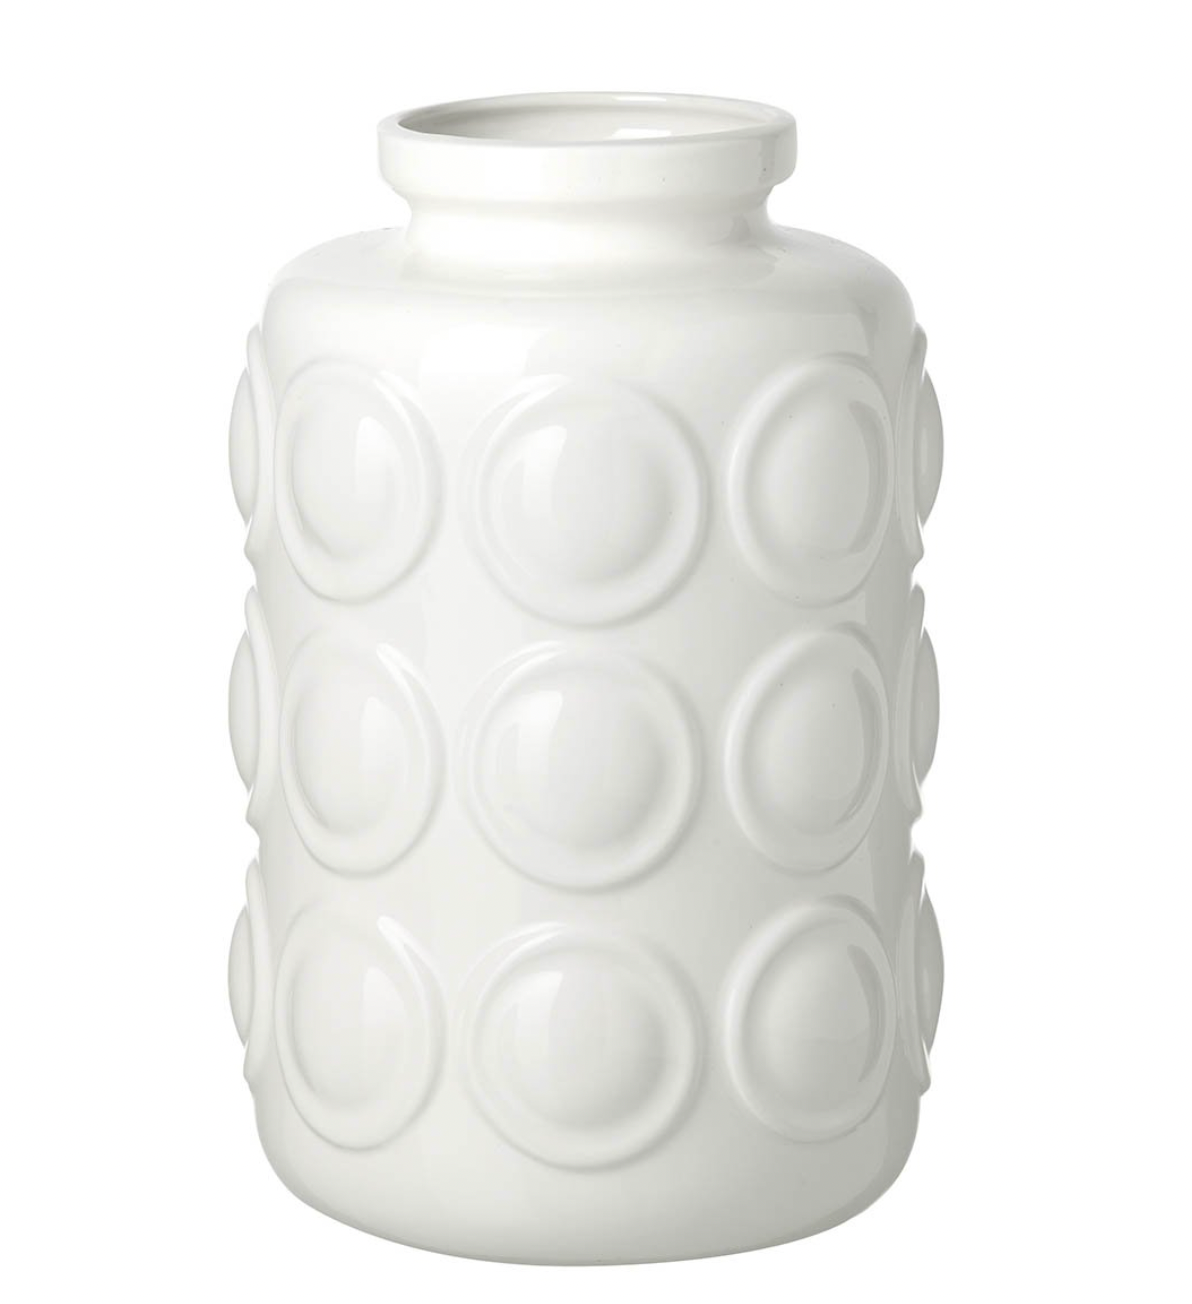 Ceramic White Orbit Vase - Medium